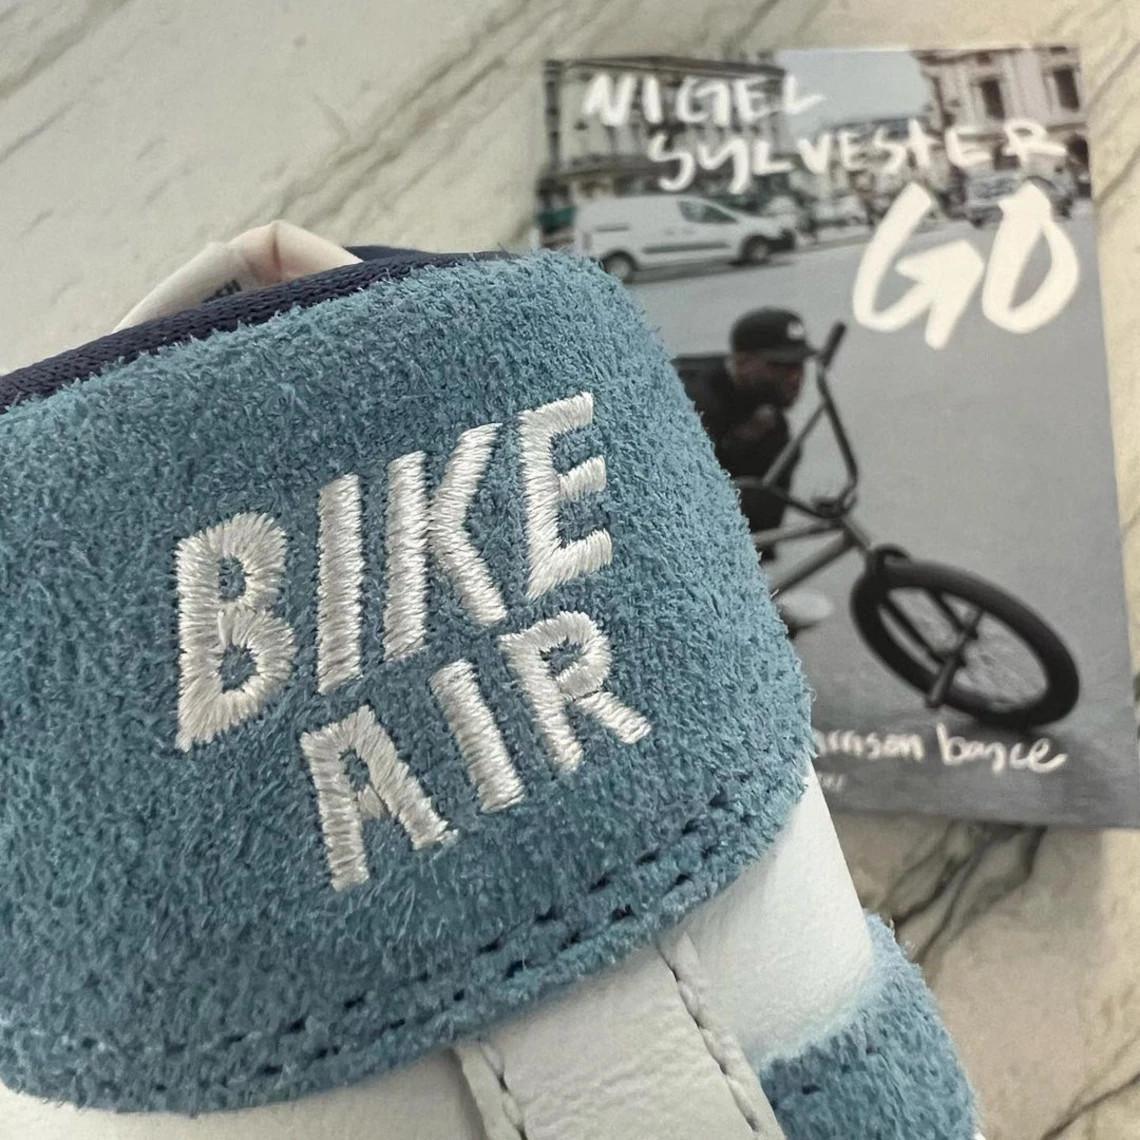 Nigel Sylvester annonce une collaboration avec Nike Air Ship sur le thème "Bike Air".